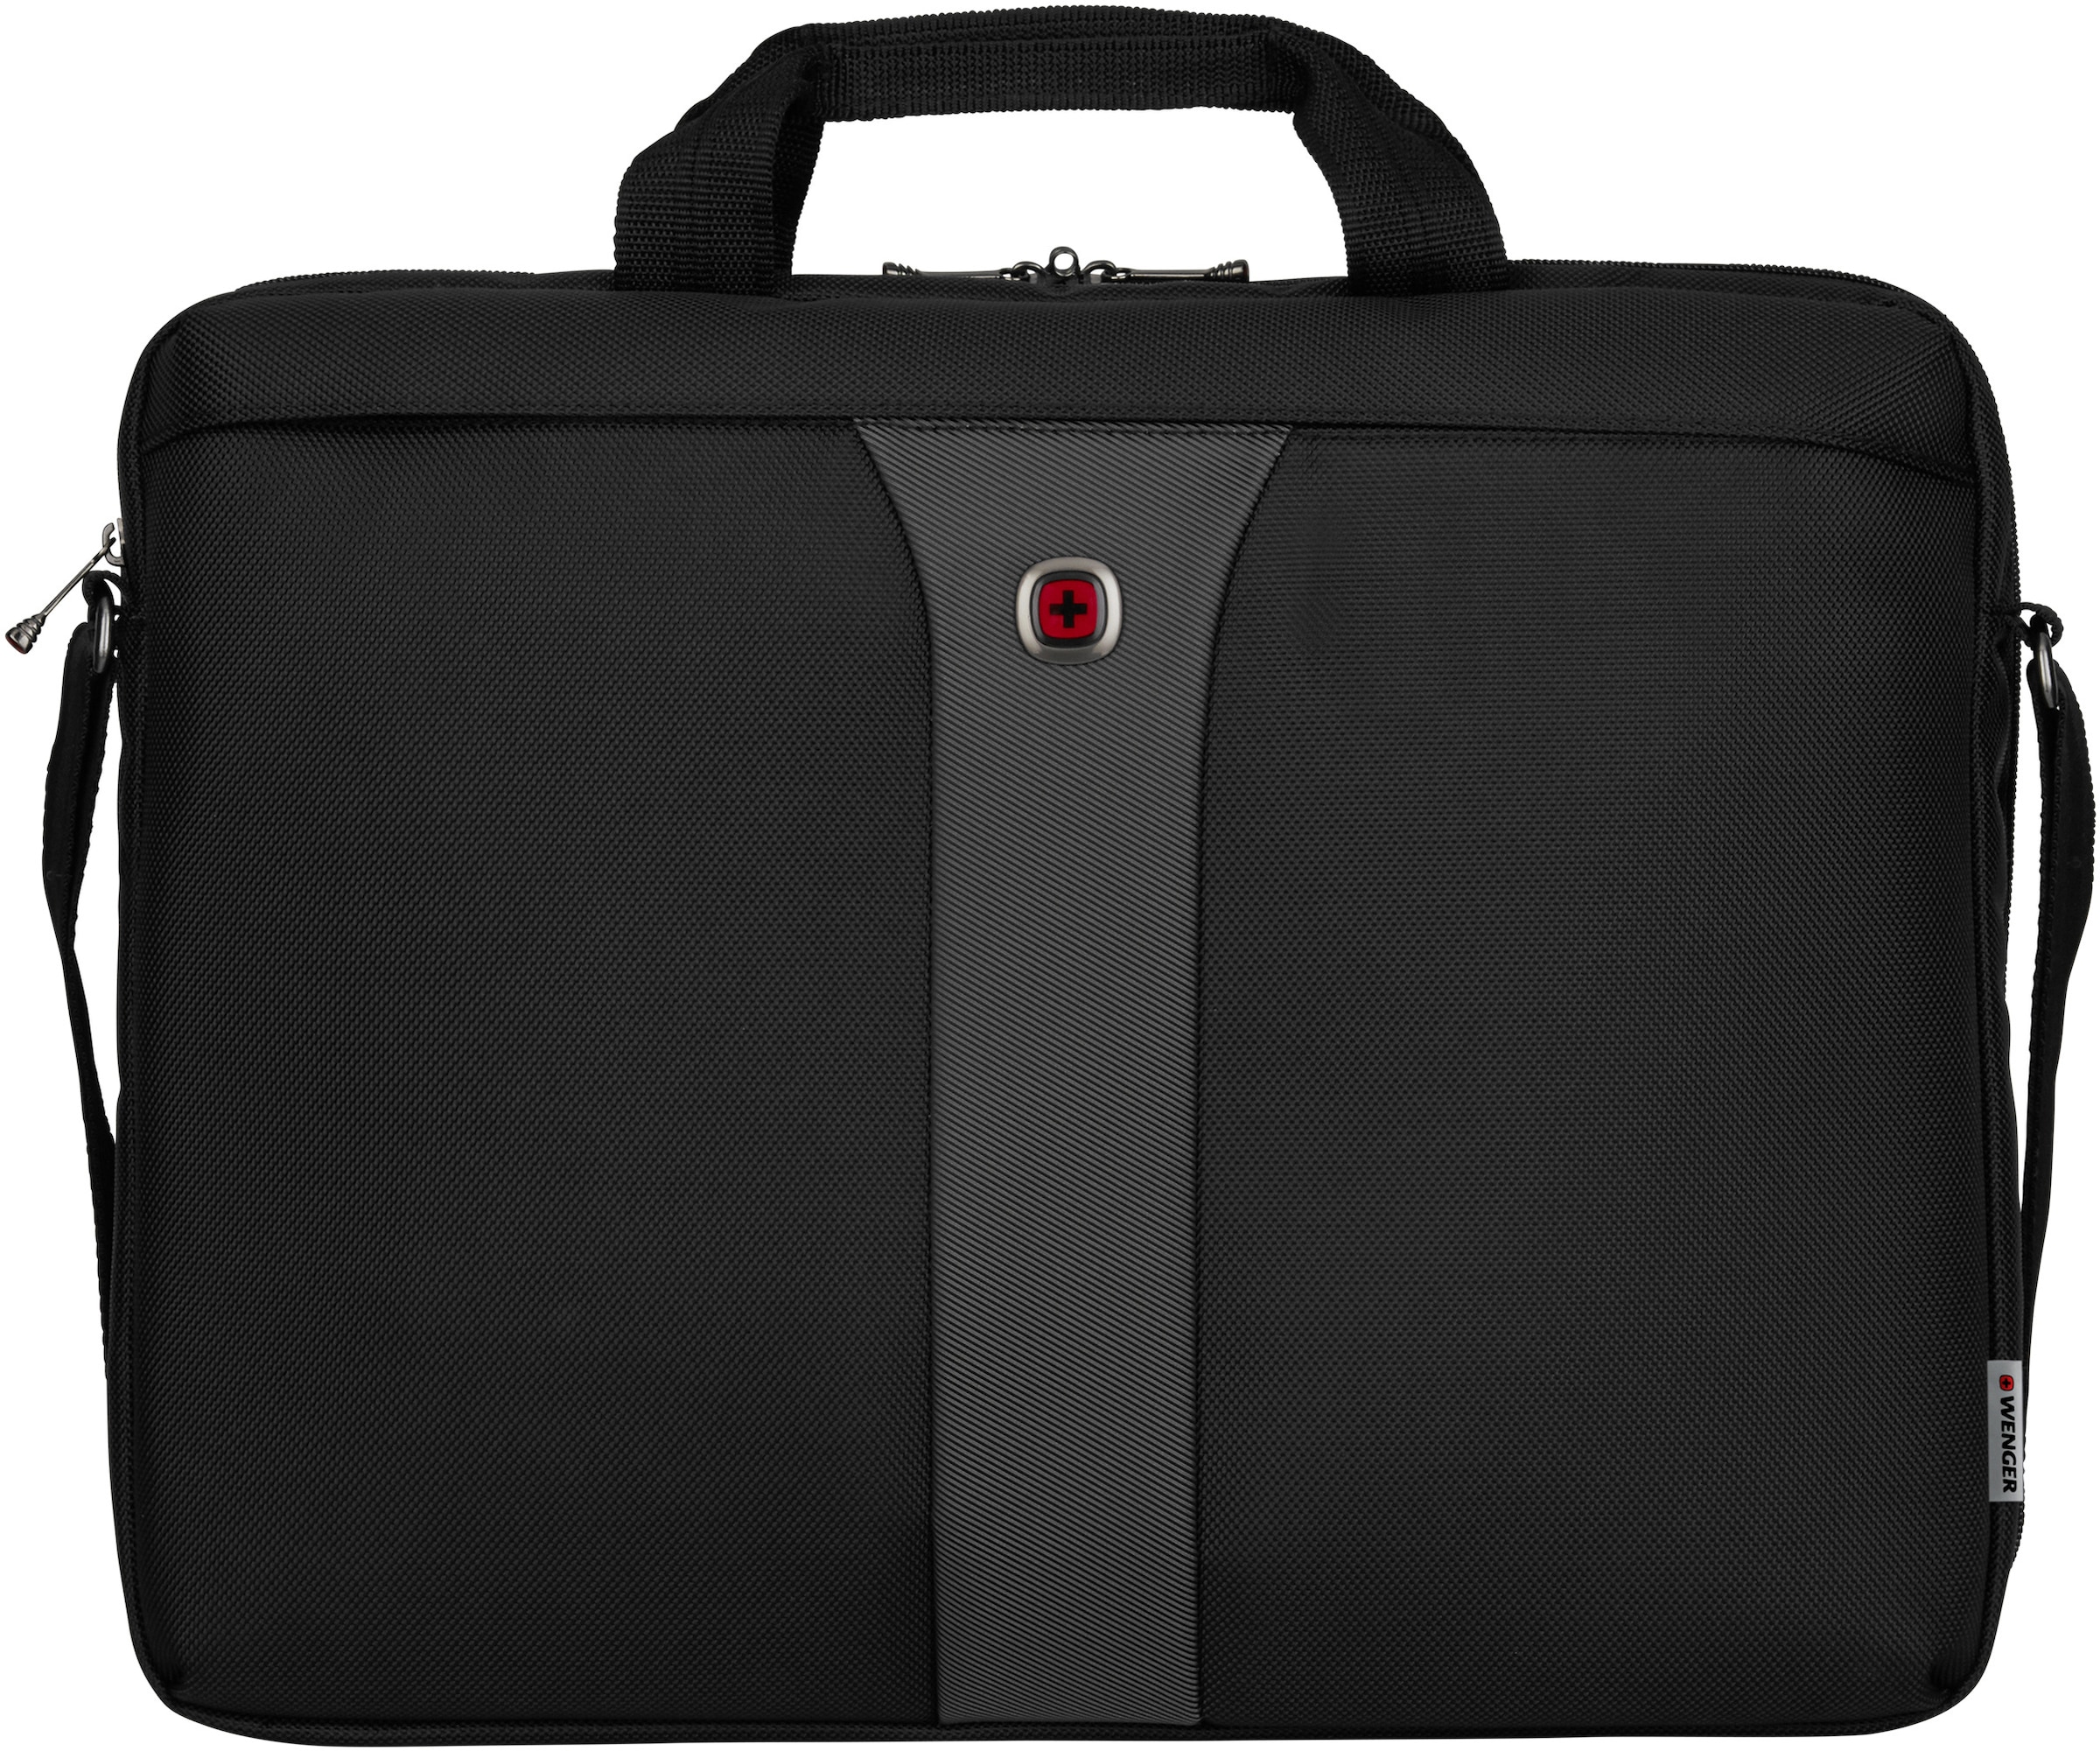 Laptoptasche »Legacy, schwarz/grau«, mit 17-Zoll Laptopfach und ShockGuard Schutzsystem